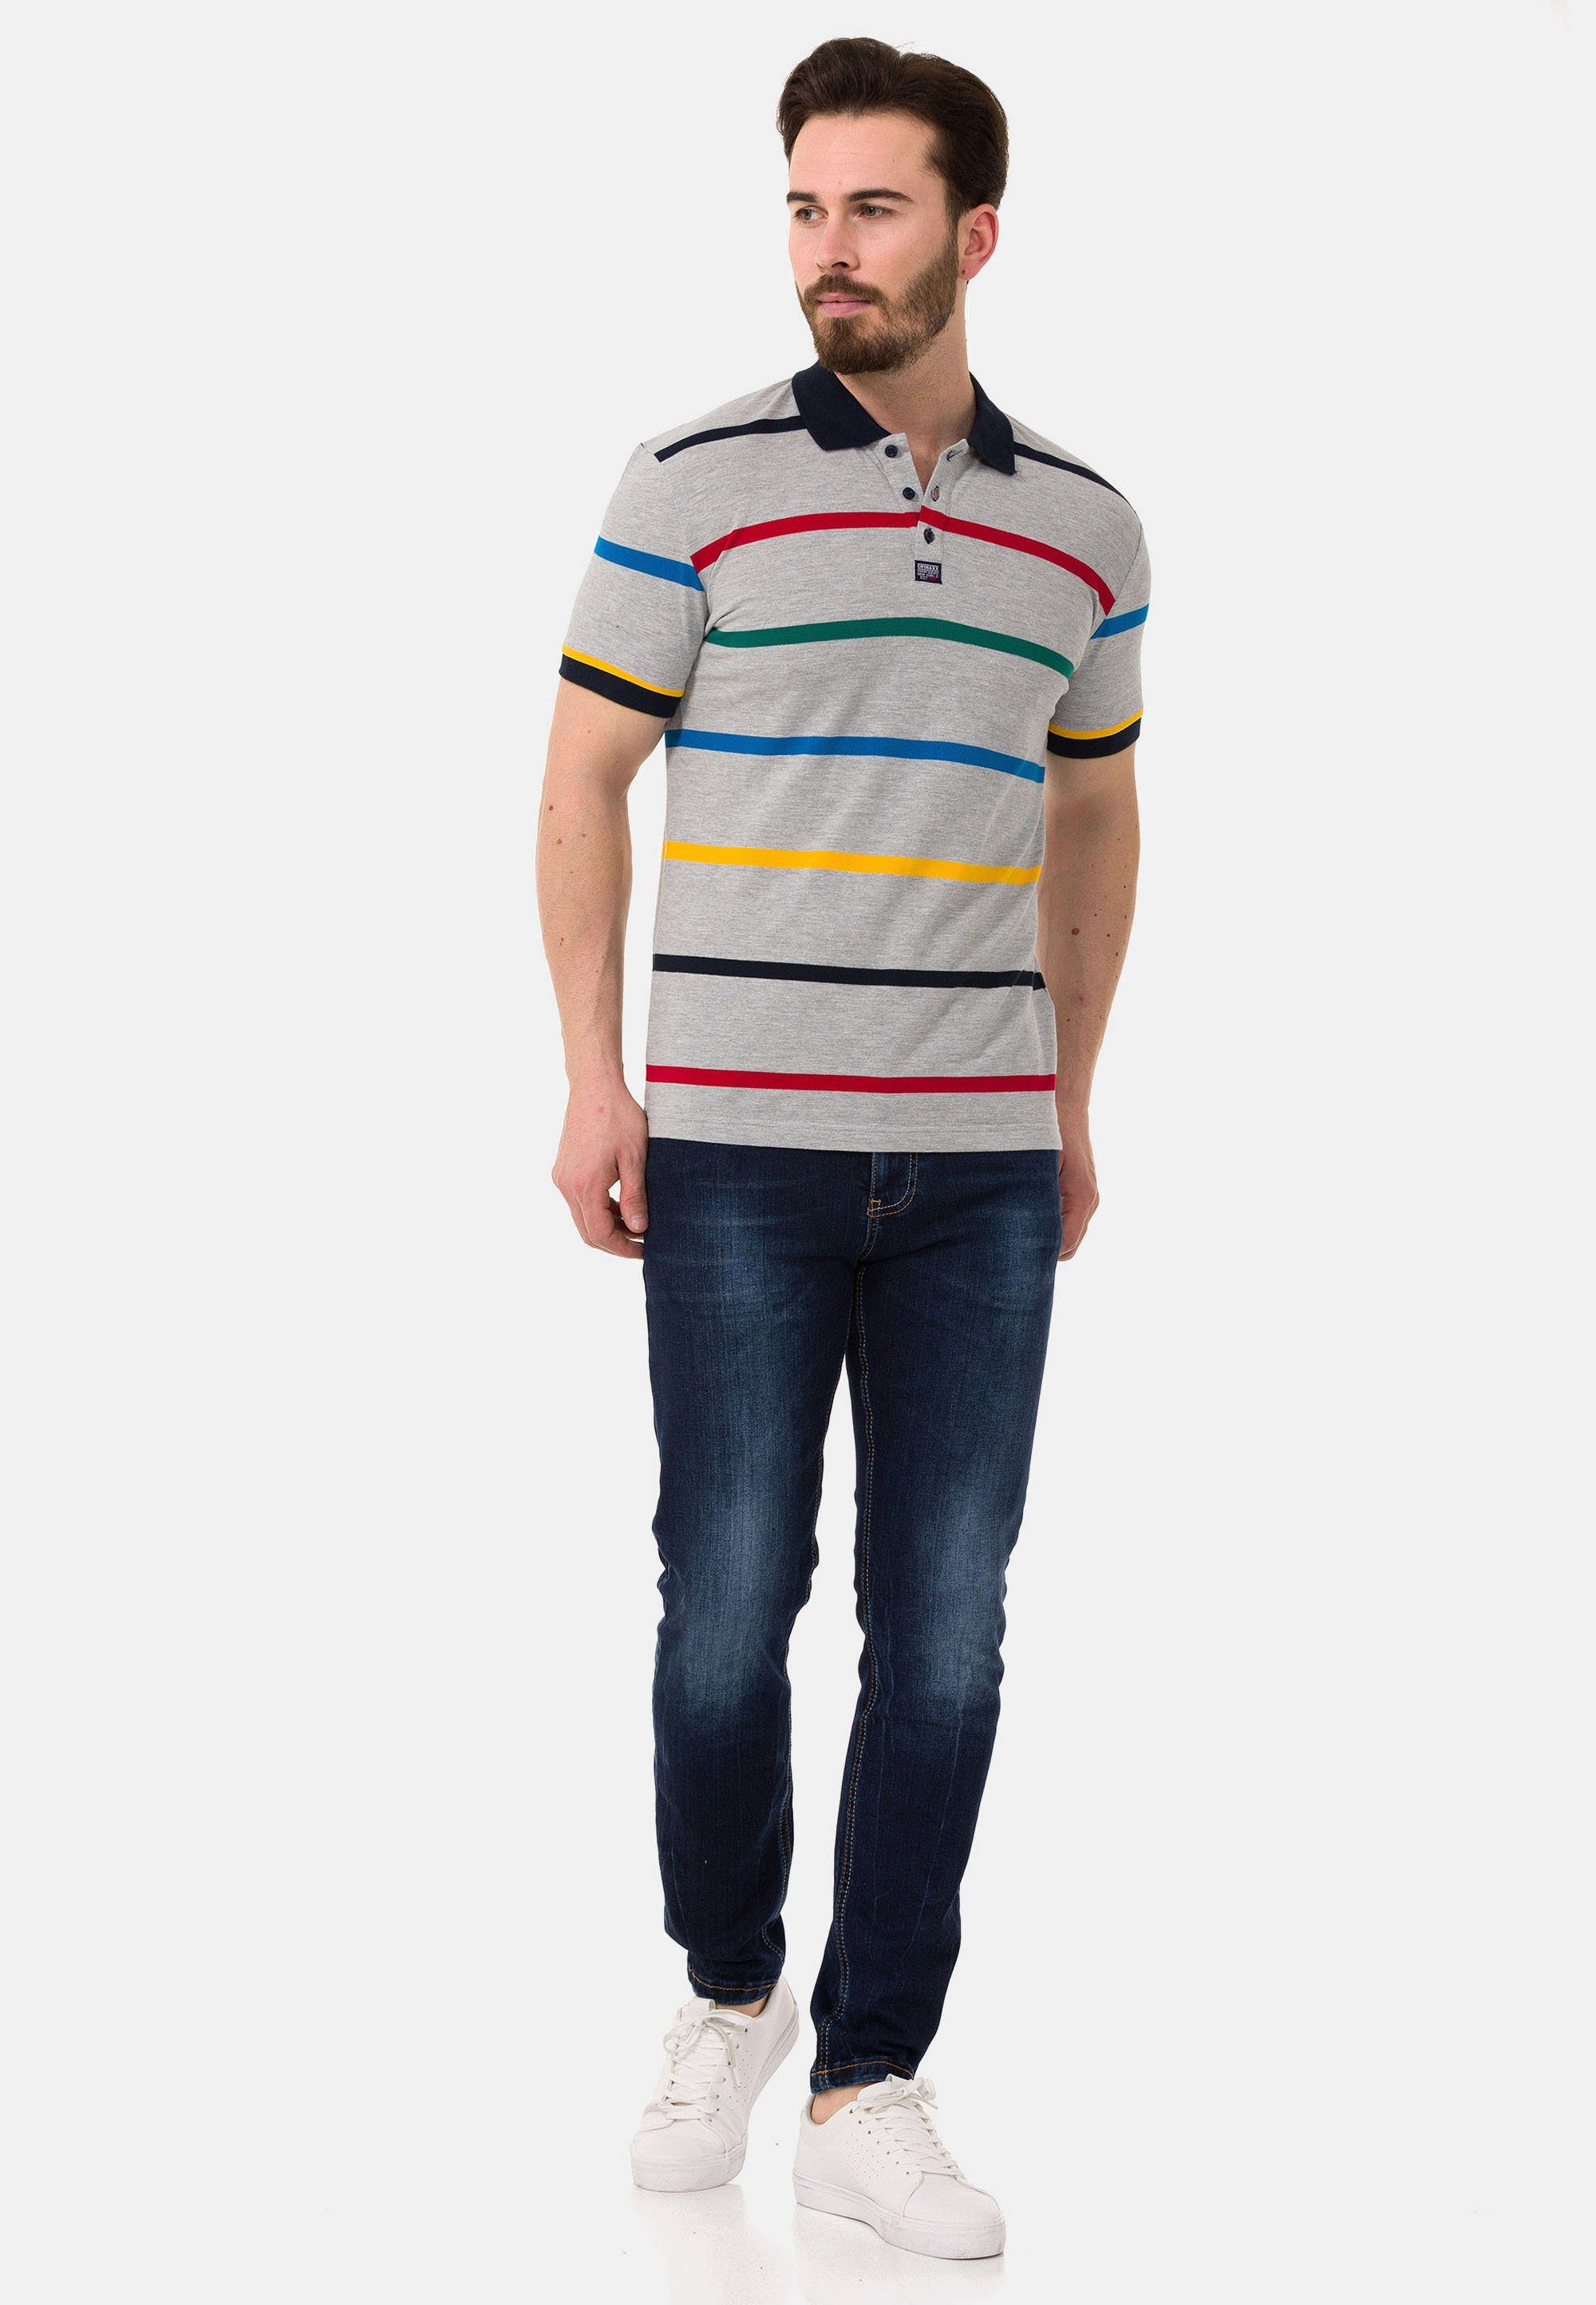 Cipo & Baxx Streifen-Design farbenfrohem grau mit Poloshirt